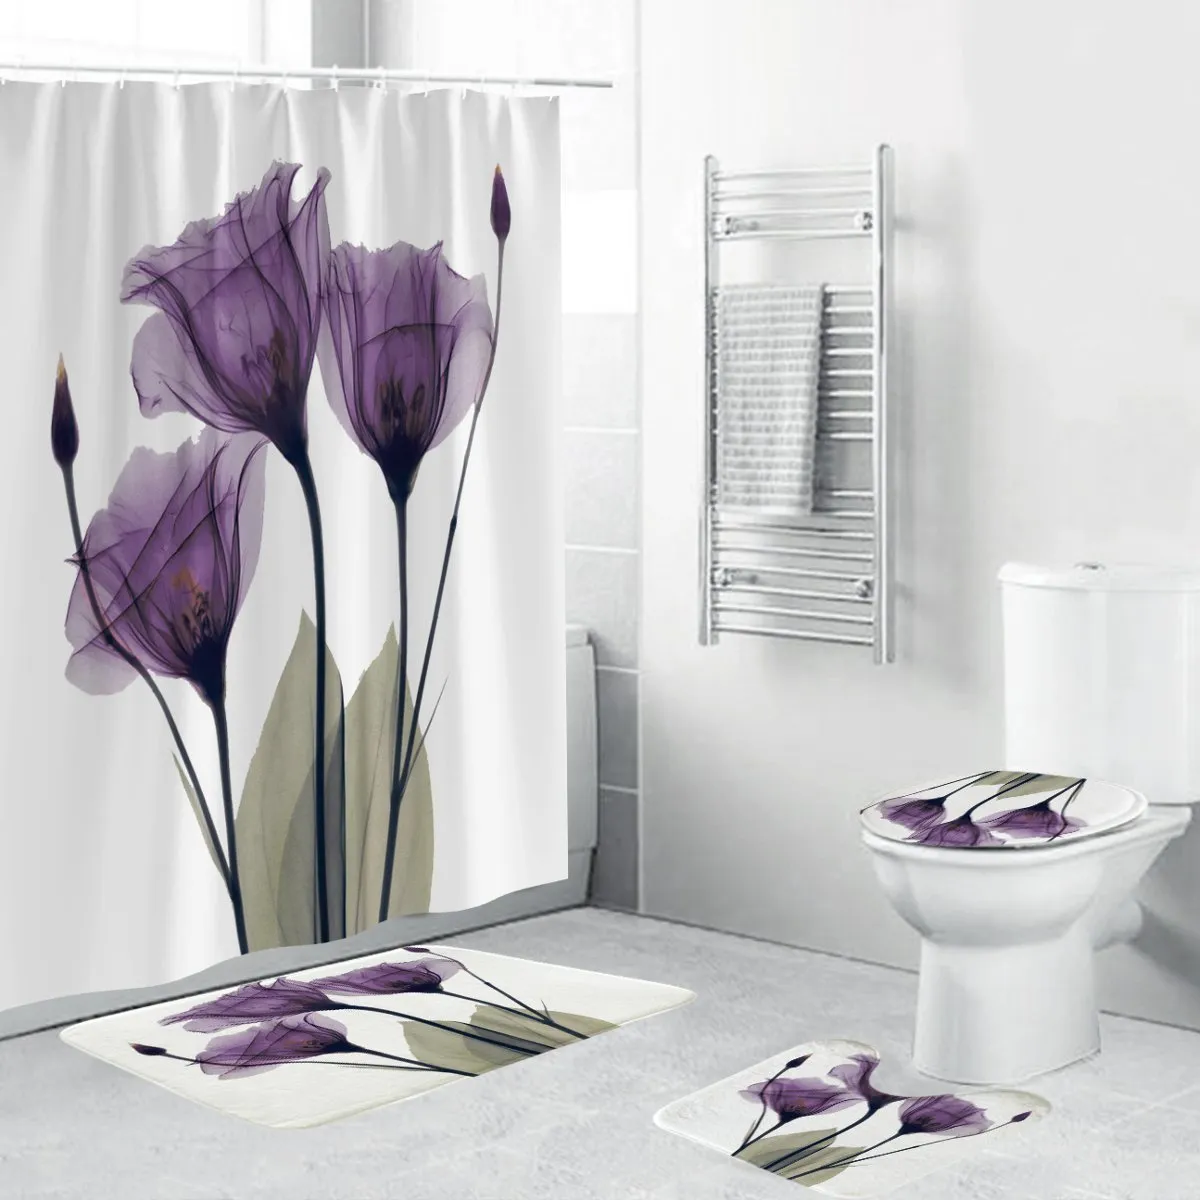 4 pcs flanela superfície de casa de banho mats chuveiro cortina antiderrapante tampa tampa tampa de banho esteira conjunto de flores roxo impressão decoração home t200711